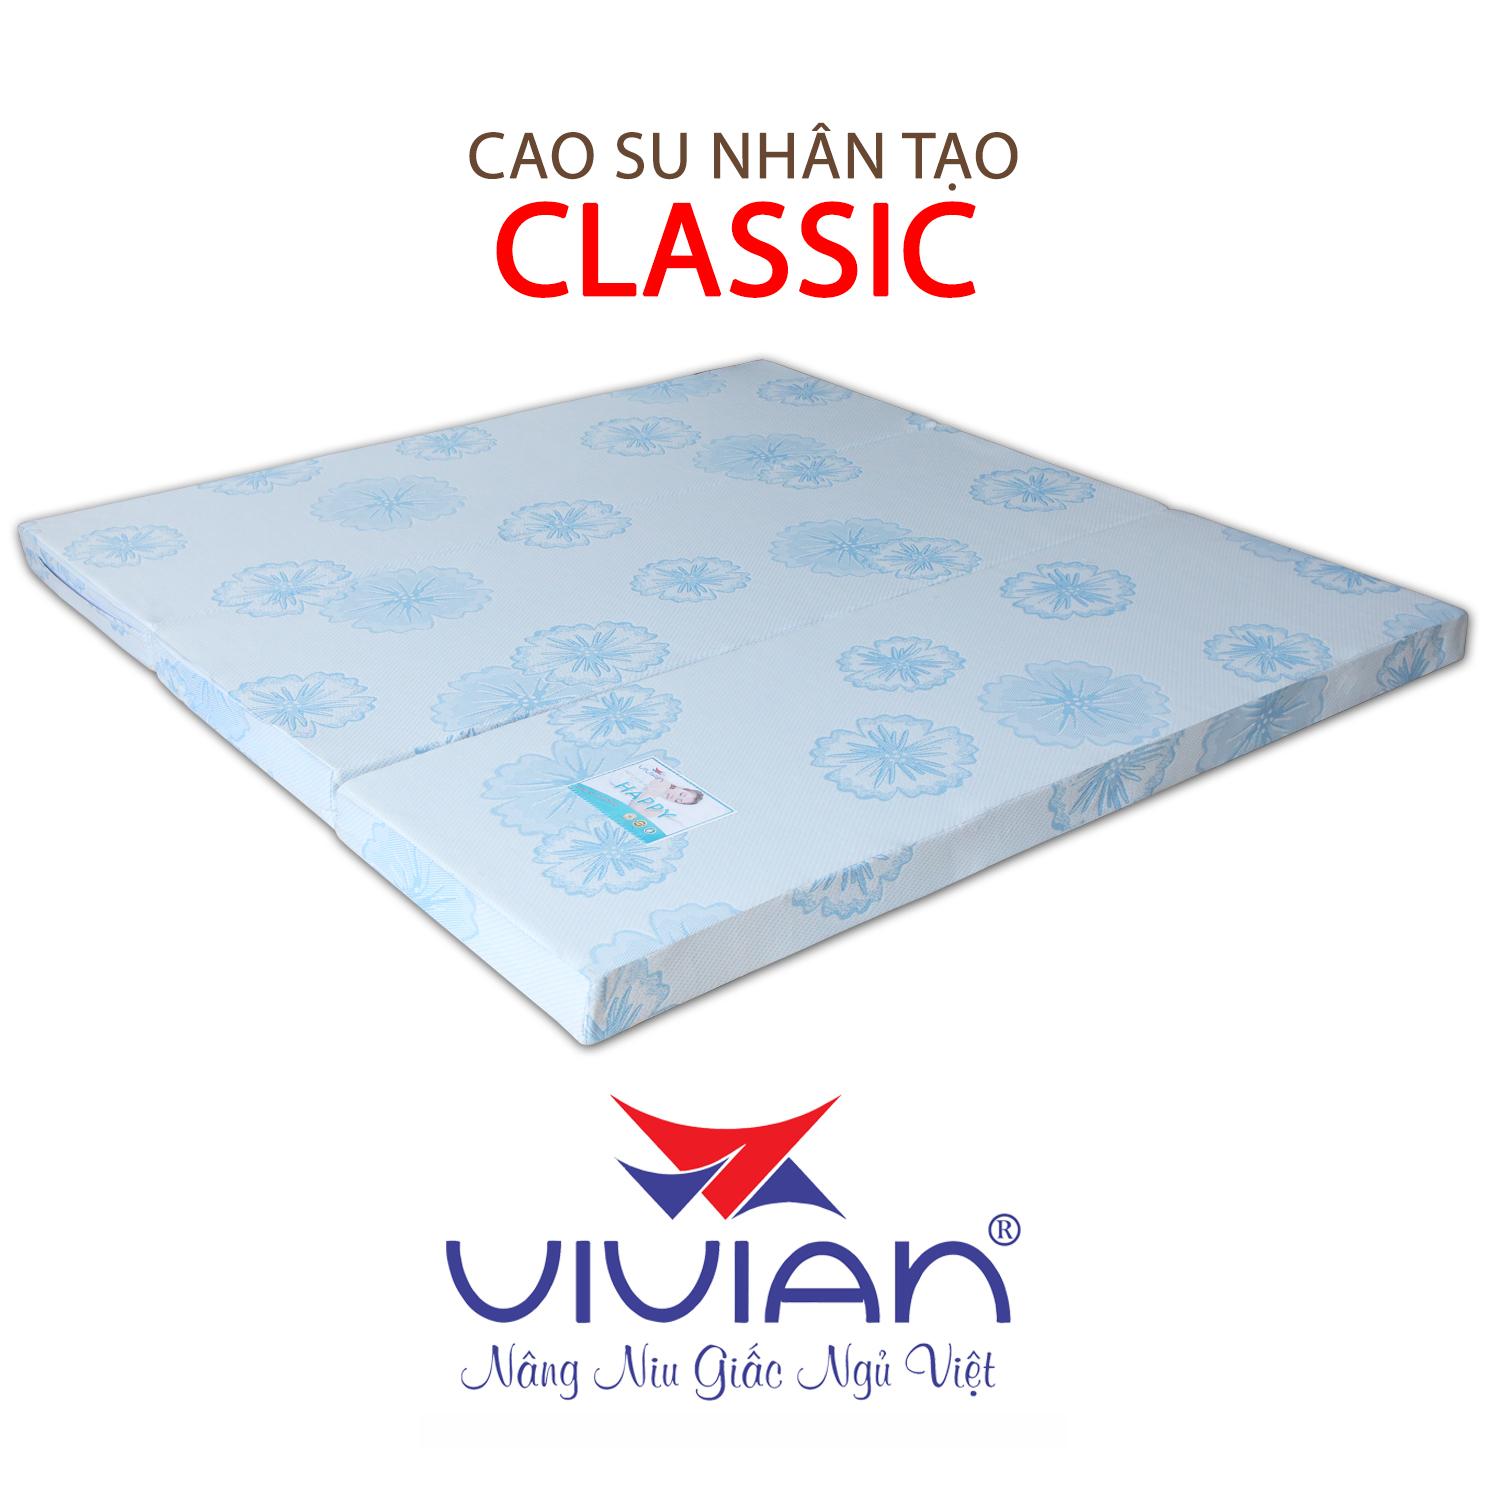 NỆM CAO SU NHÂN TẠO CLASSIC GẤP 3 VIVIAN 120X200X5